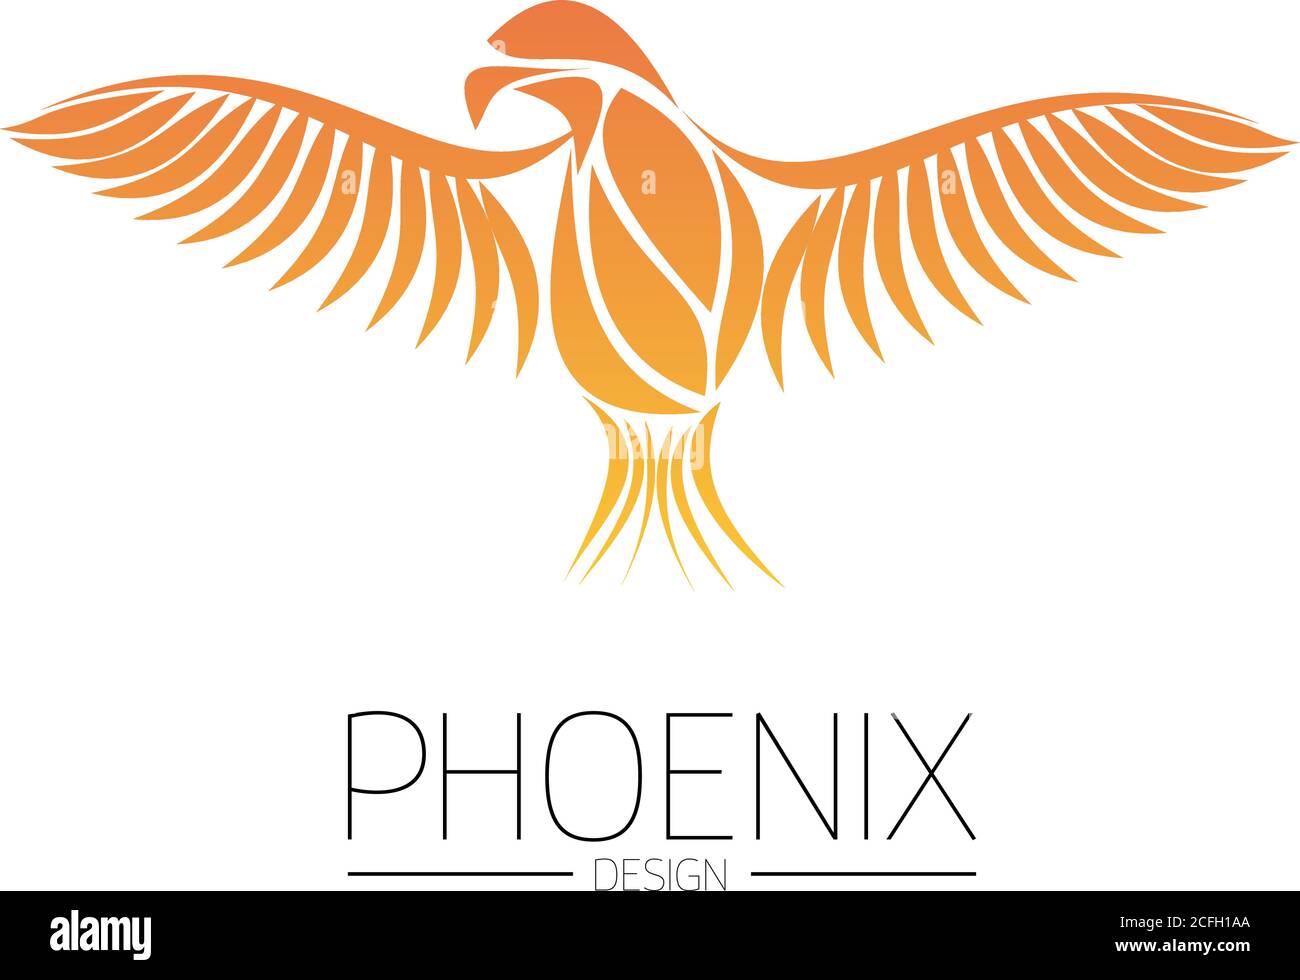 Fiammeggiante Phoenix Bird con ampie ali sparse nei colori arancio fuoco su sfondo bianco. Simbolo di rinascita e rigenerazione. Illustrazione vettoriale EPS10. Illustrazione Vettoriale